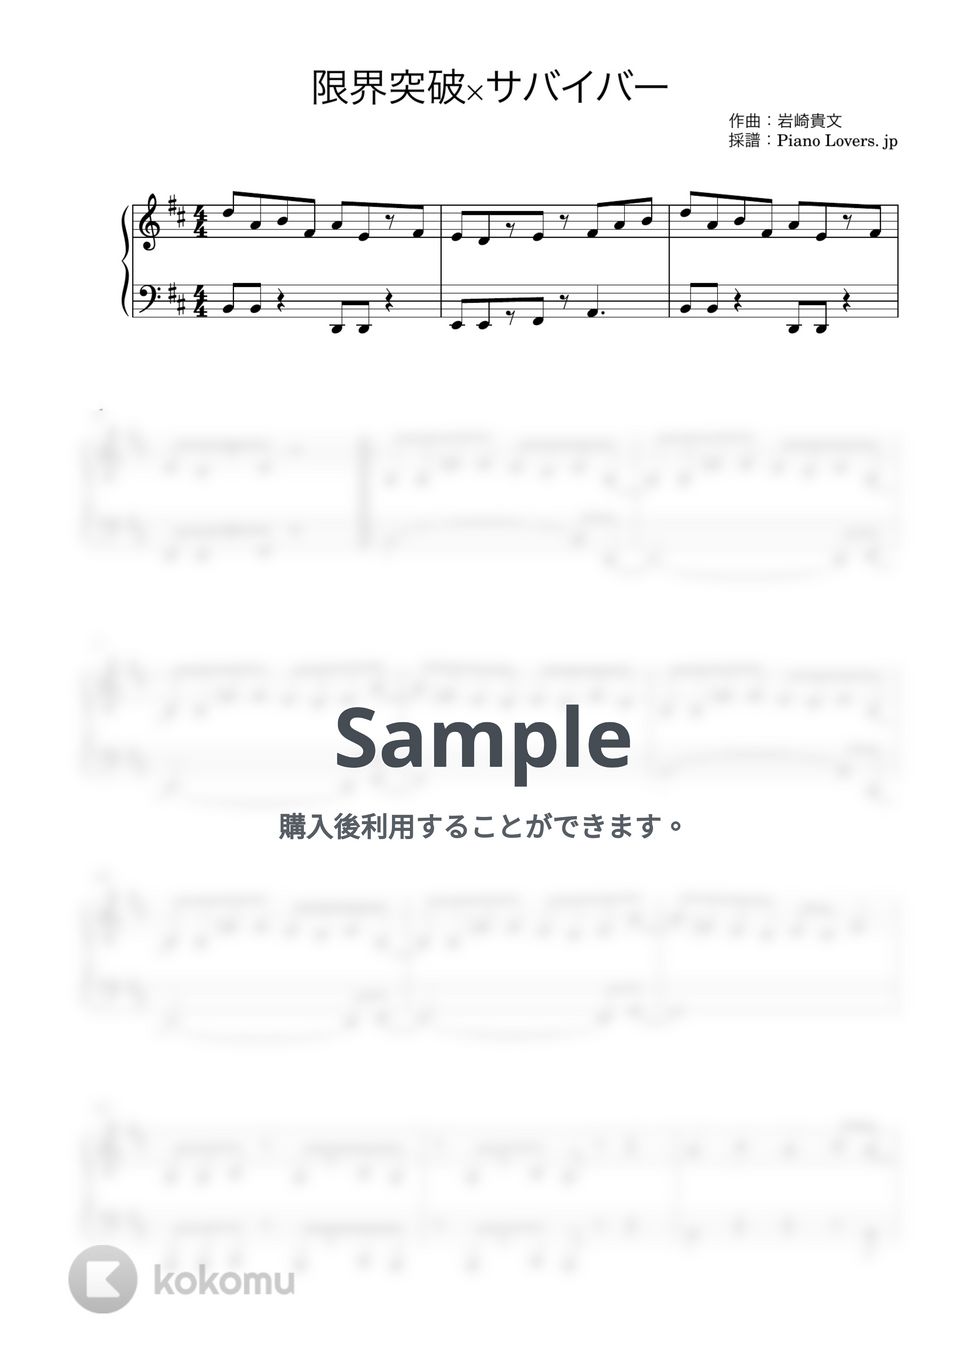 氷川きよし - 限界突破×サバイバー (ドラゴンボール超) by Piano Lovers. jp